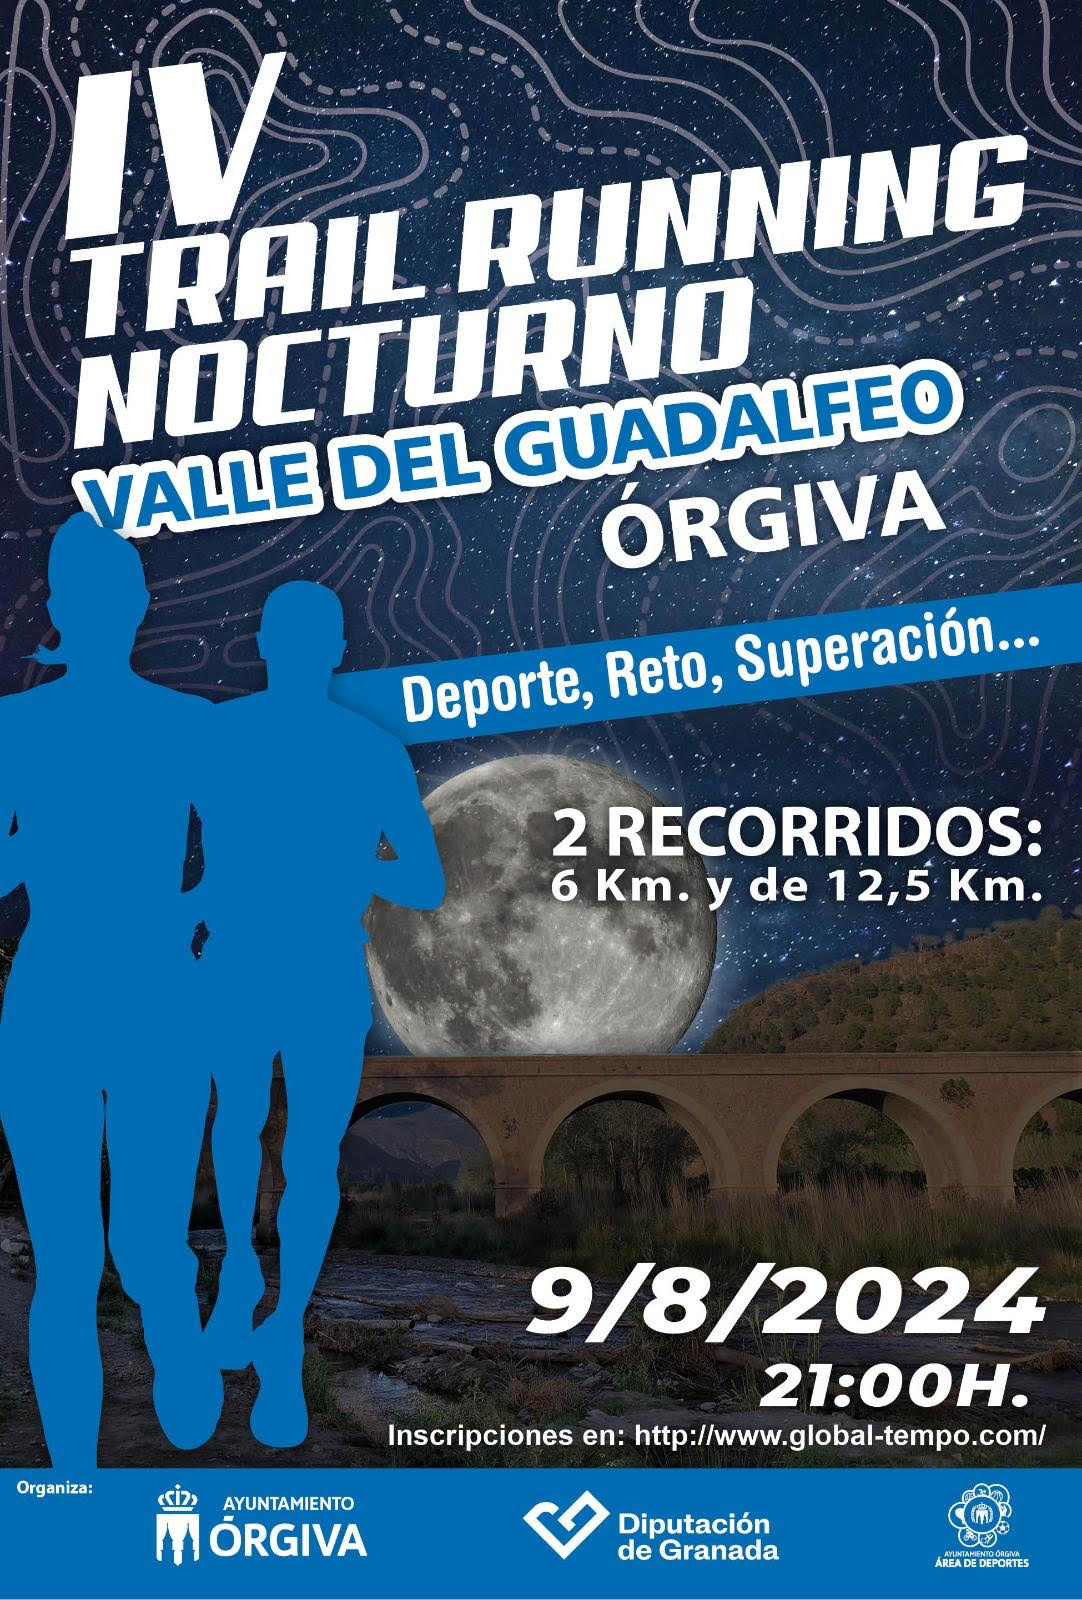 IV TRAIL RUNNING NOCTURNO "VALLE DEL GUADALFEO"